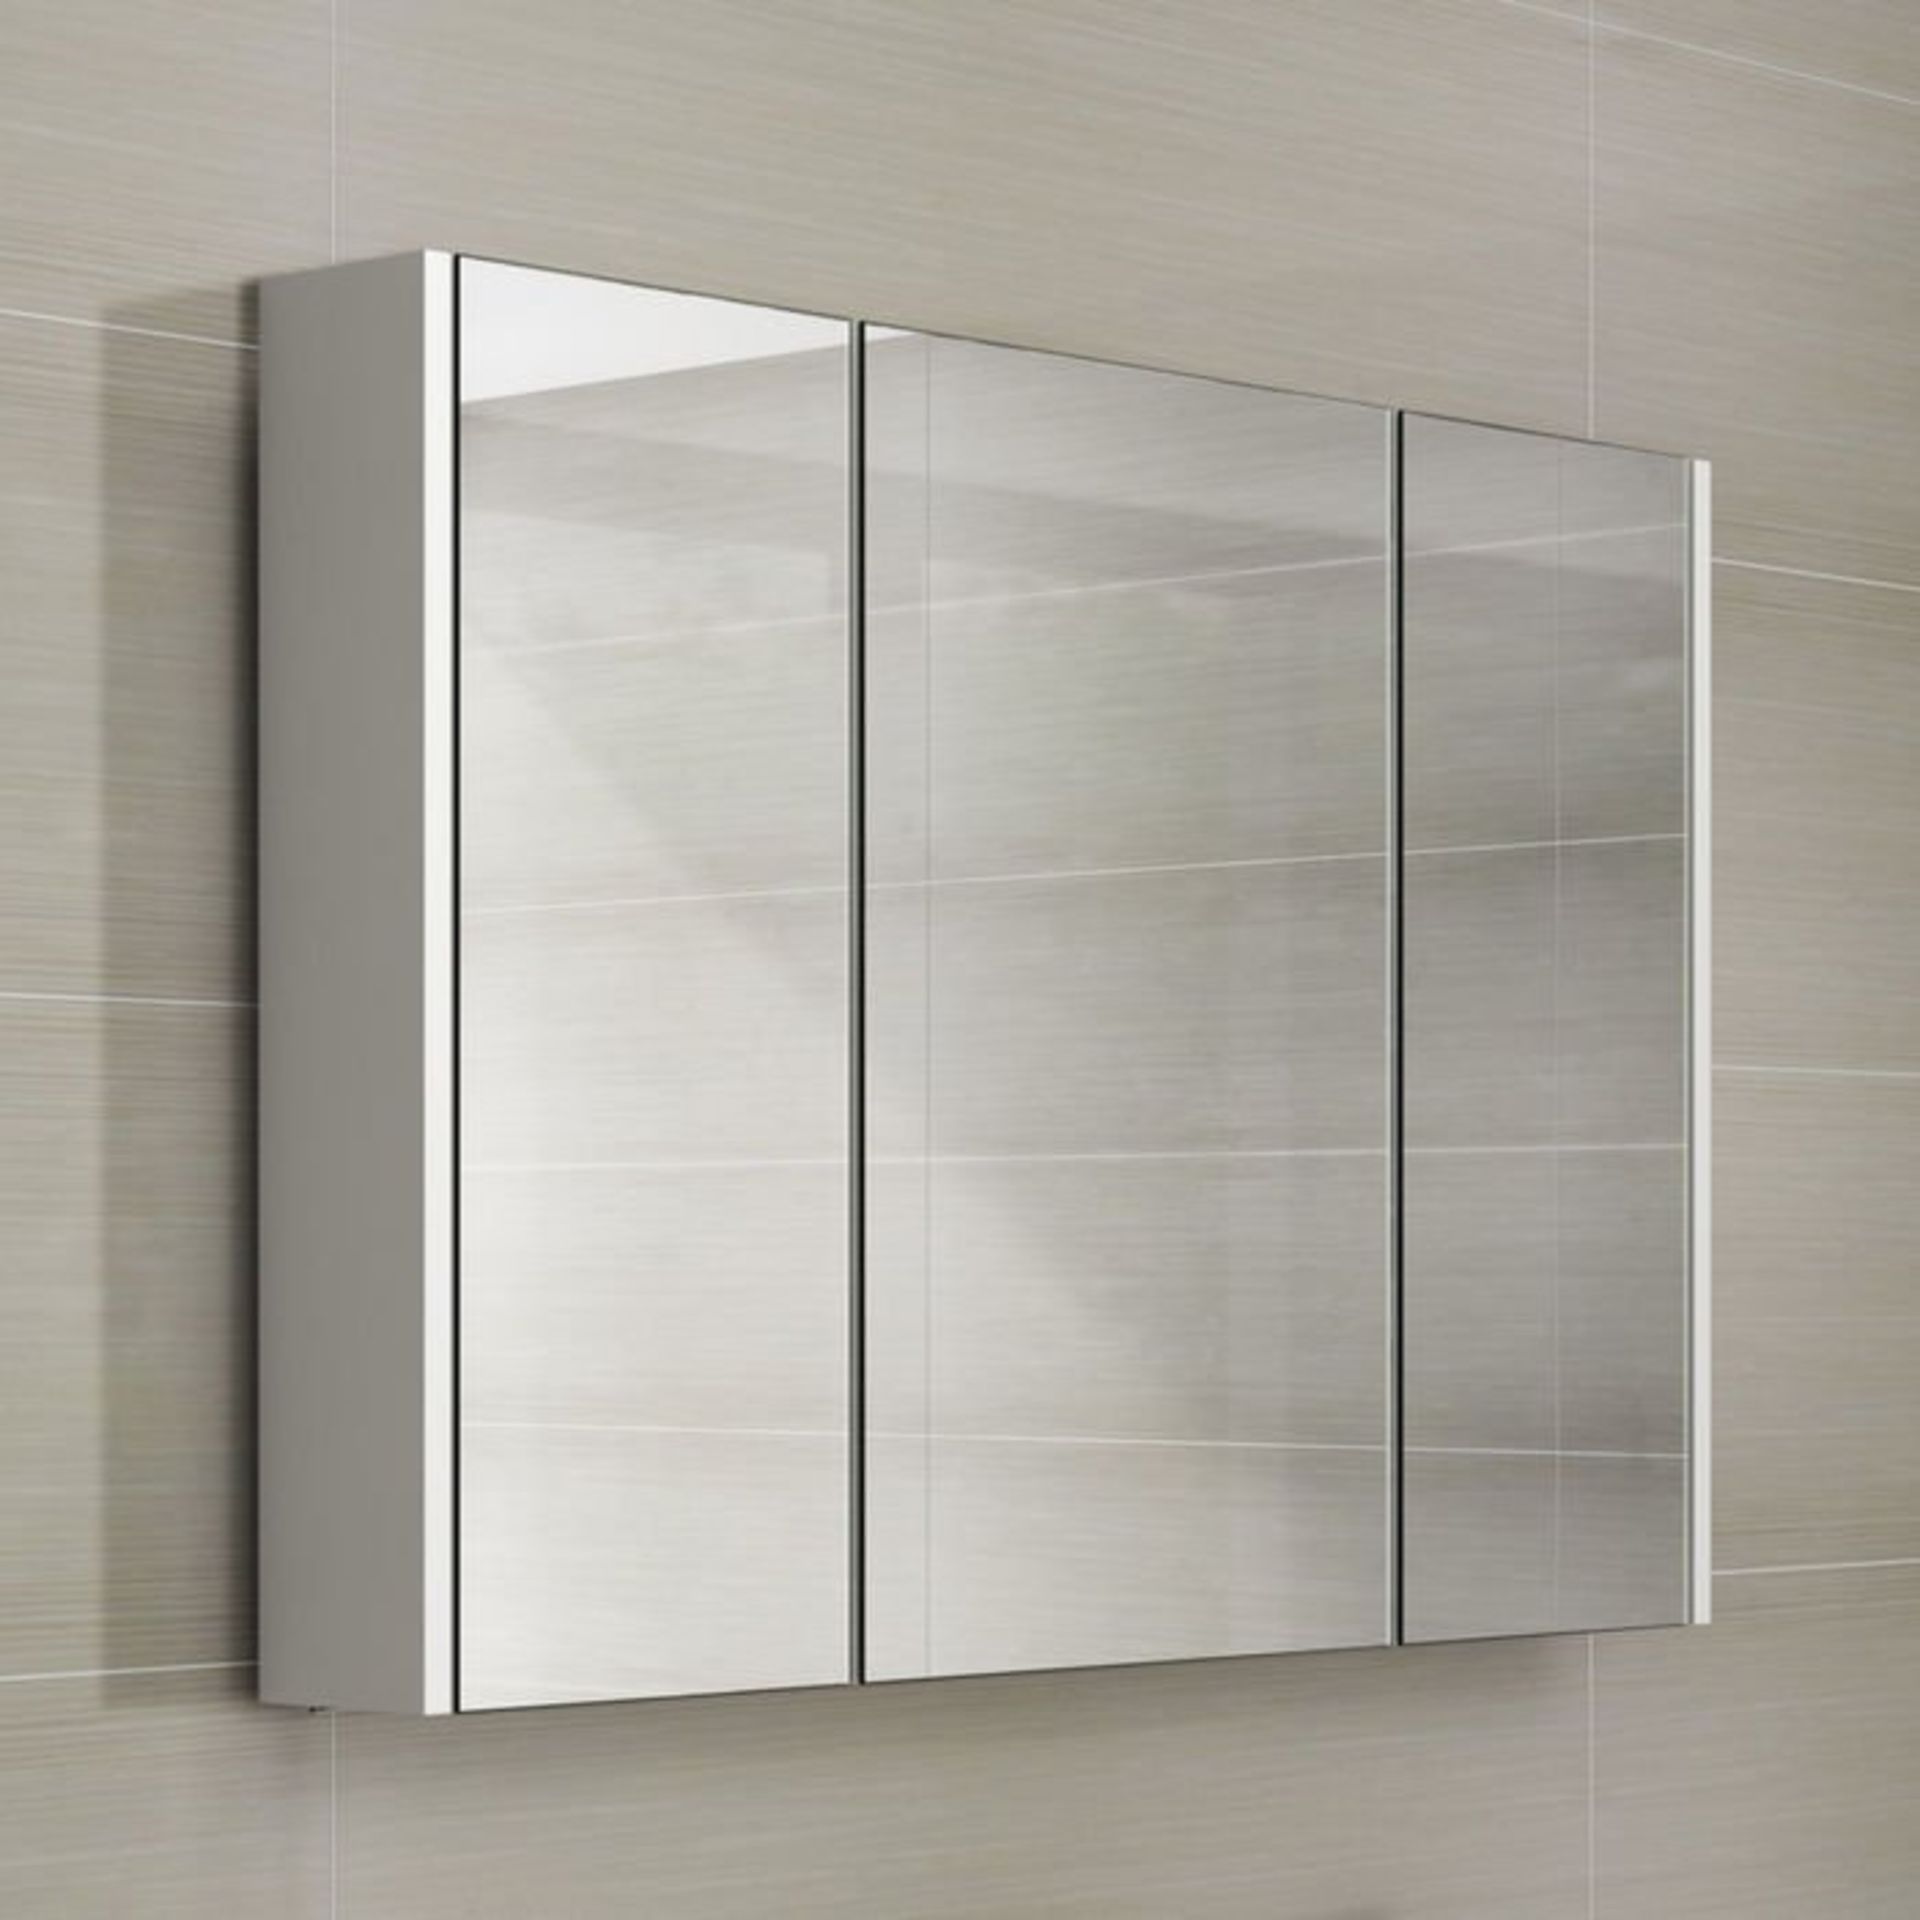 (L18)900mm Gloss White Triple Door Mirror Cabinet RRP £299.99. Sleek contemporary design Triple door